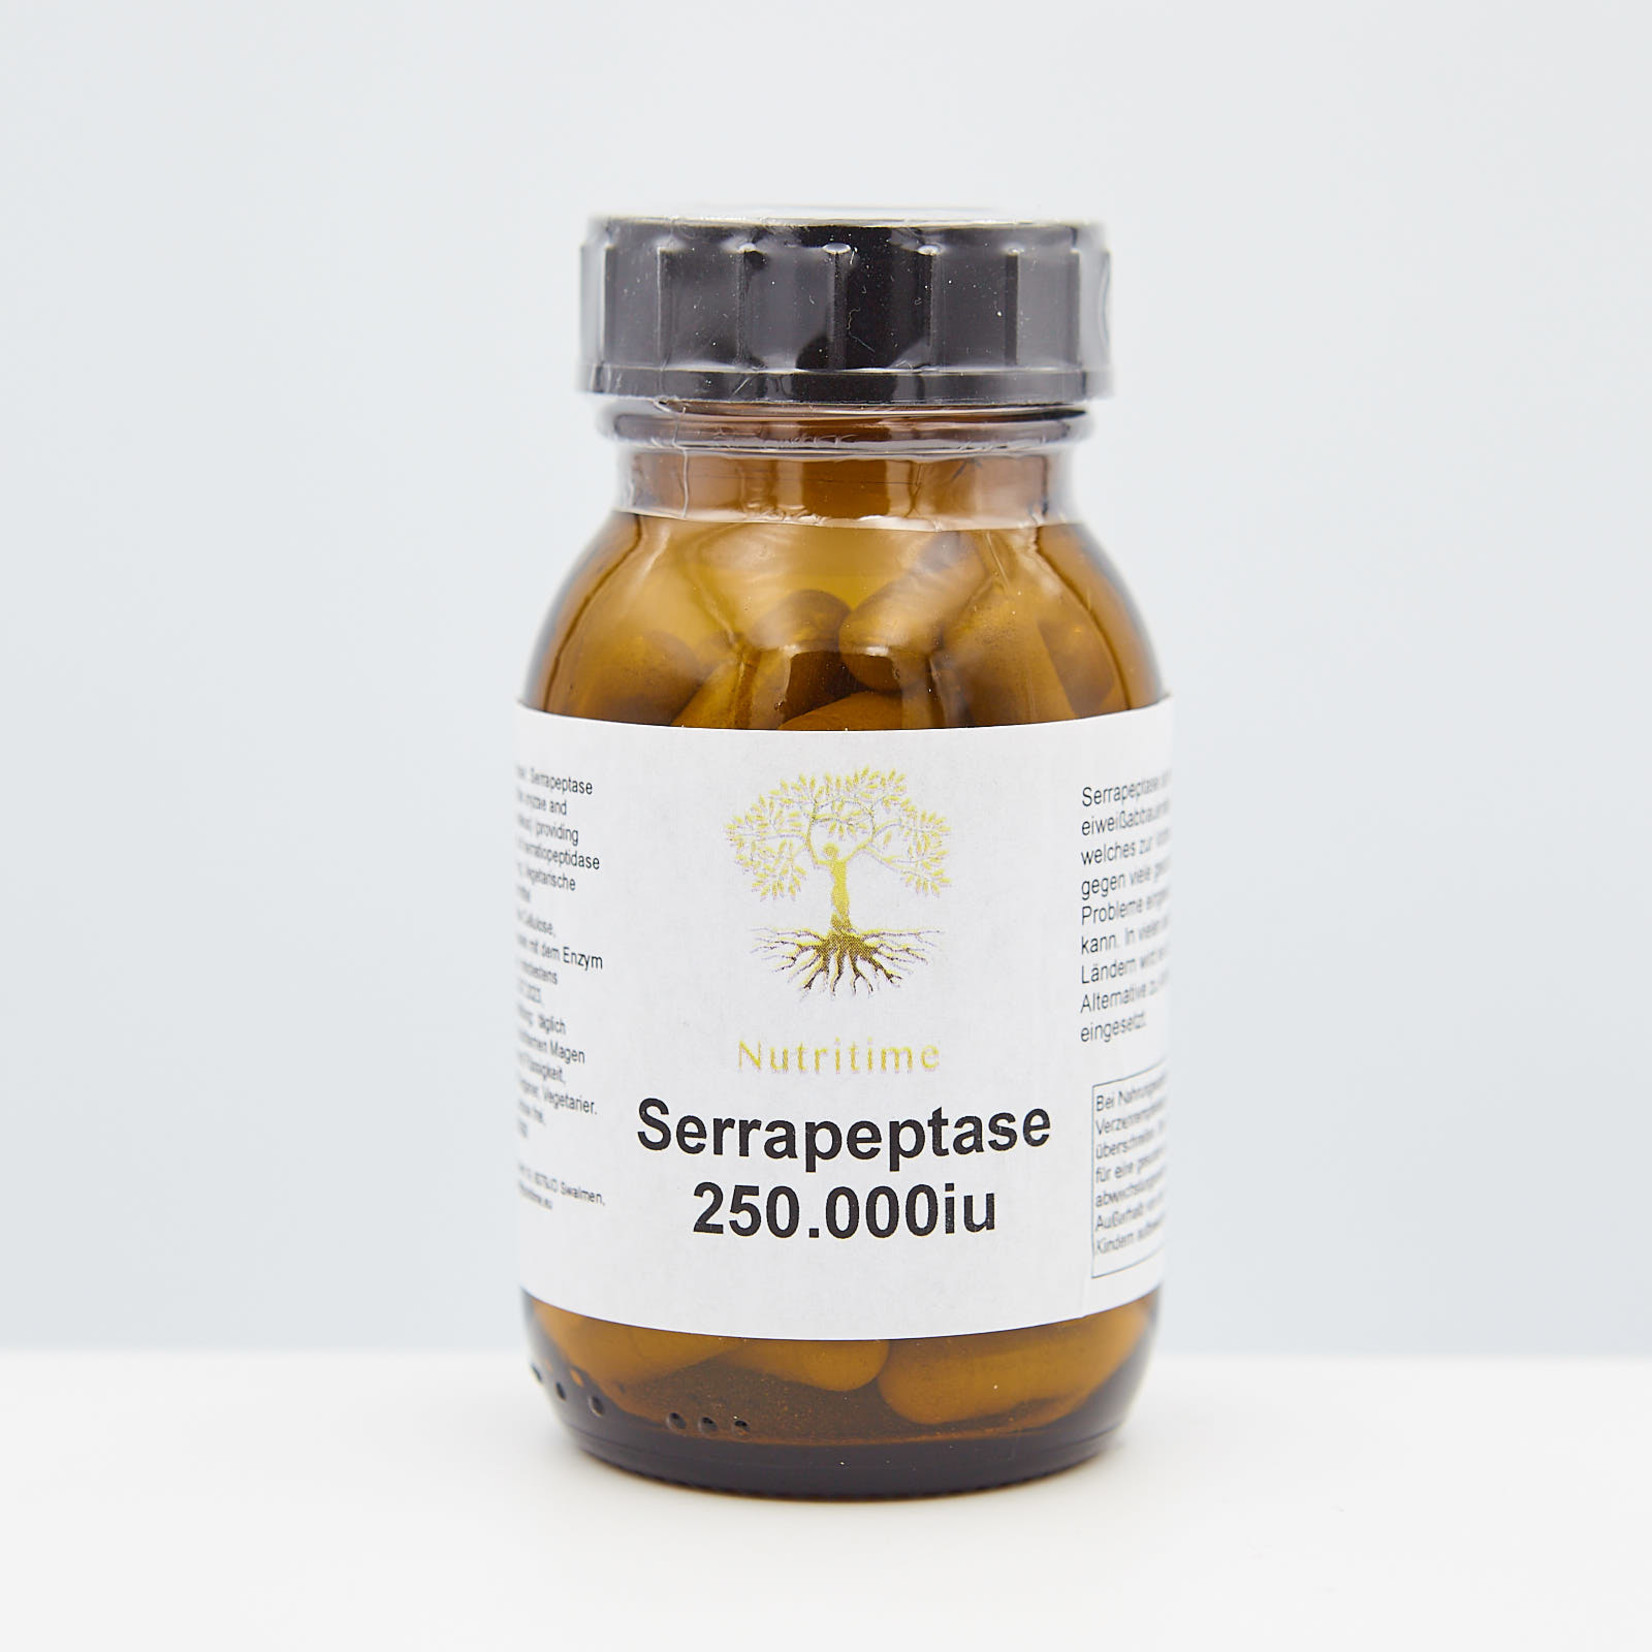 Nutritime Serrapeptase, Das Enzym der Seidenraupe, 250.000iµ